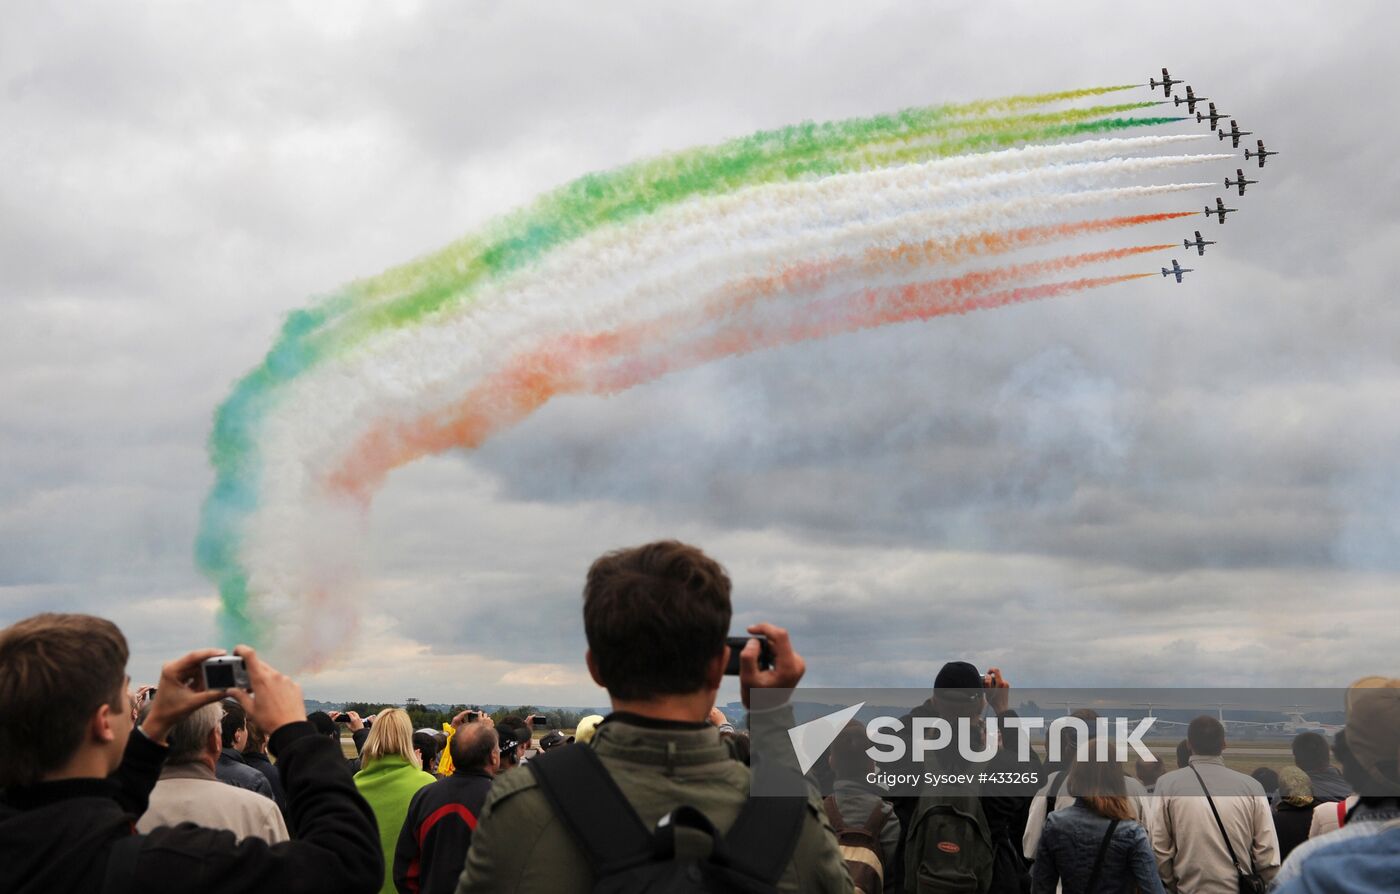 Frecce Tricolori, Italian aerobatic demonstration team